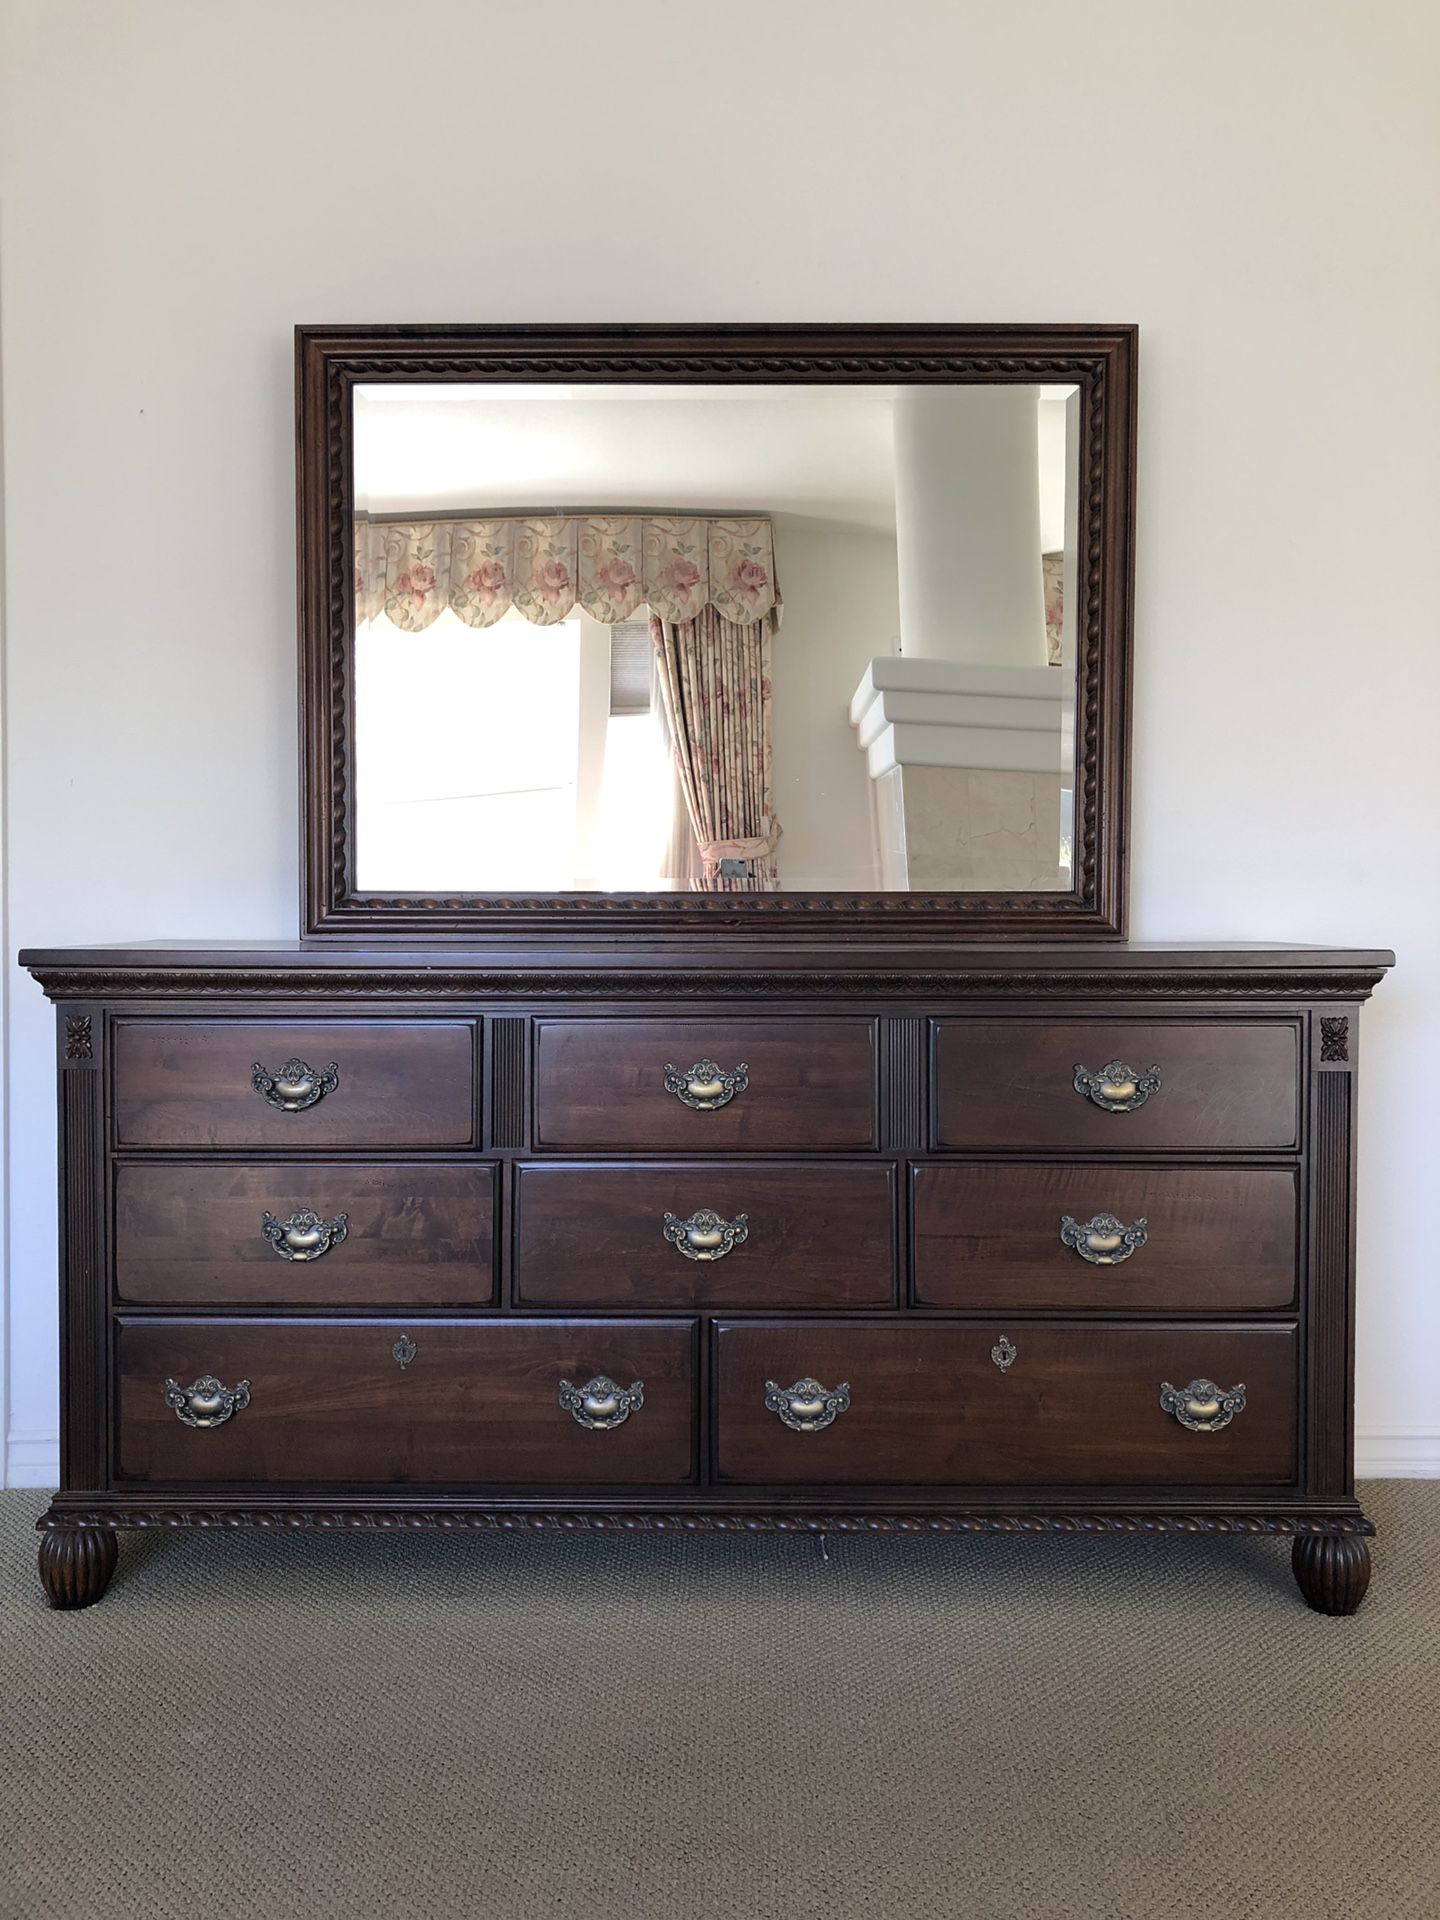 Antique Dark Cherry Wood Dresser With, Antique Cherry Wood Dresser With Mirror